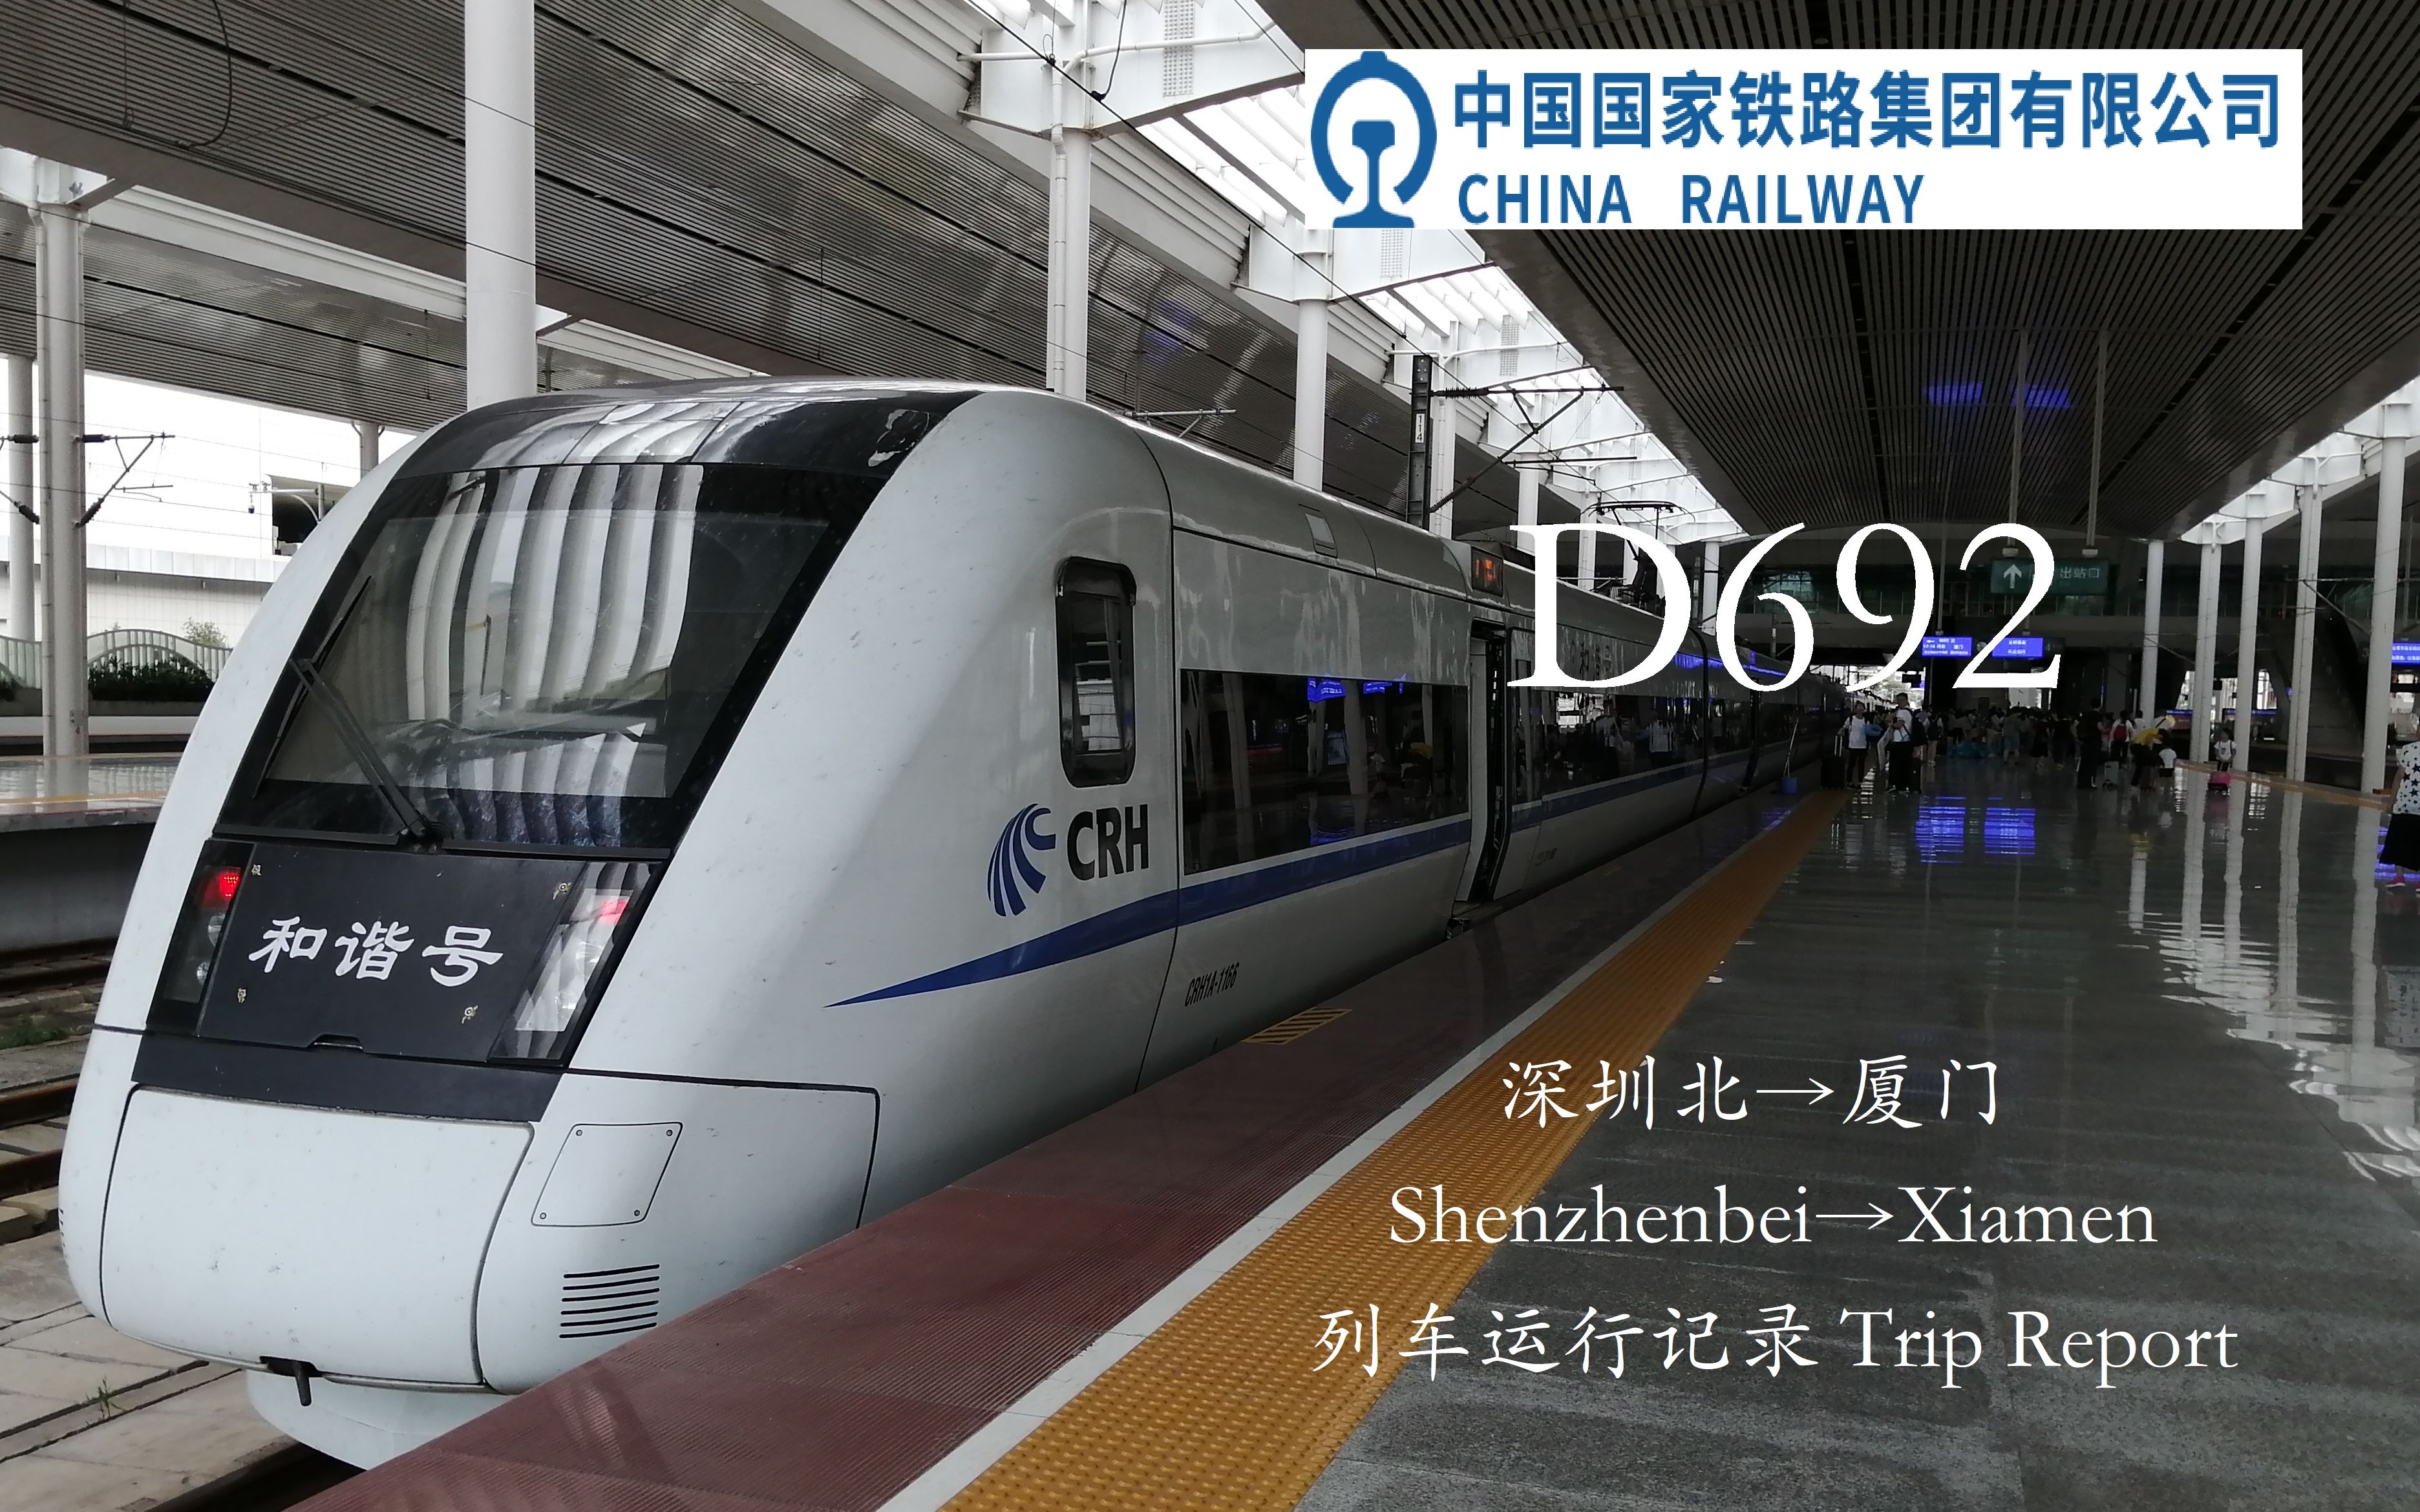 中国铁路 Crh 深厦铁路d692 深圳北 厦门列车运行记录 哔哩哔哩 つロ干杯 Bilibili